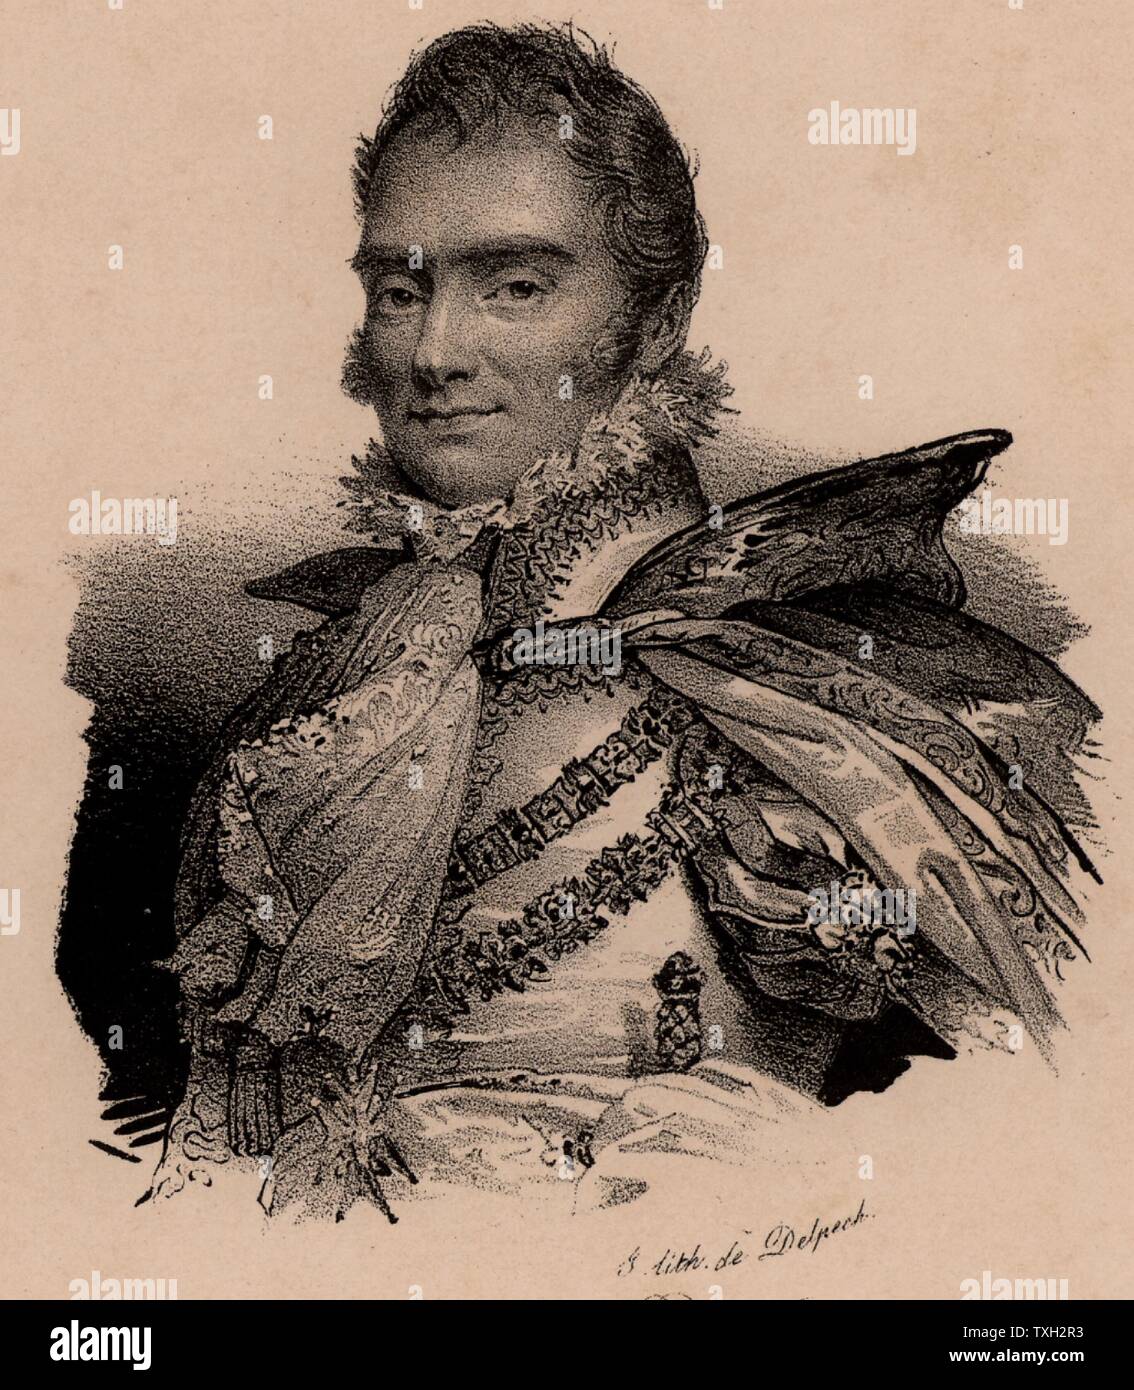 Charles Ferdinand, Duc de Berry (1778-1820), aristocrate français, deuxième fils de Charles X de France ; assassiné par fanatique bonapartiste. Lithographie c1830 Banque D'Images